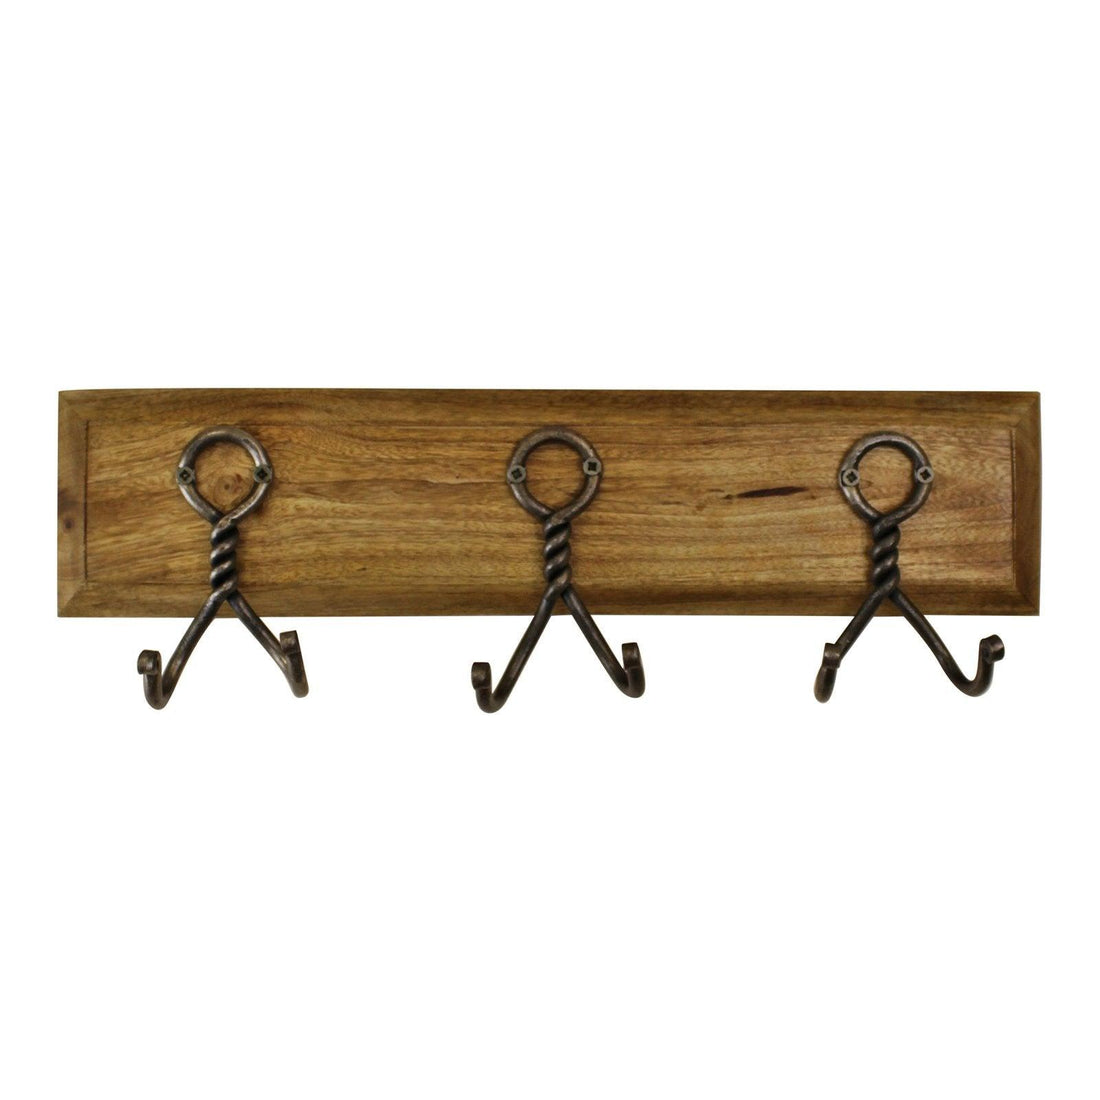 3 Piece Double Metal Hooks On Wooden Base - £41.99 - Coat Hooks 